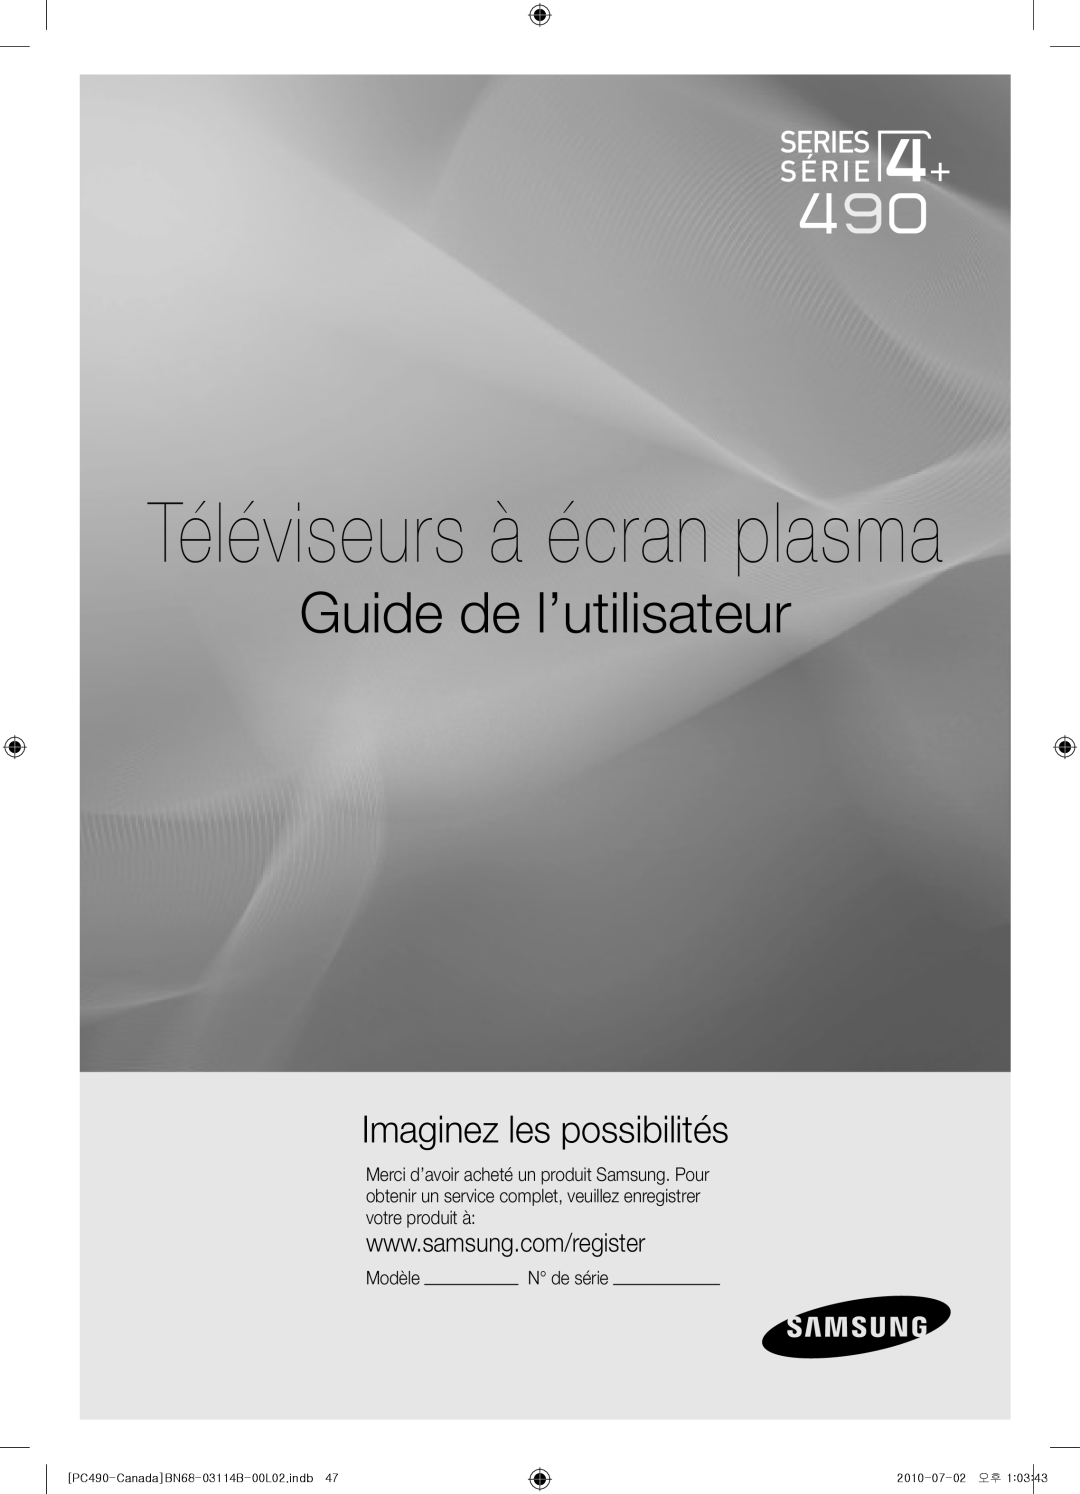 Samsung Series P4+ 490, BN68-03114B-01 Guide de l’utilisateur, Imaginez les possibilités, Téléviseurs à écran plasma 